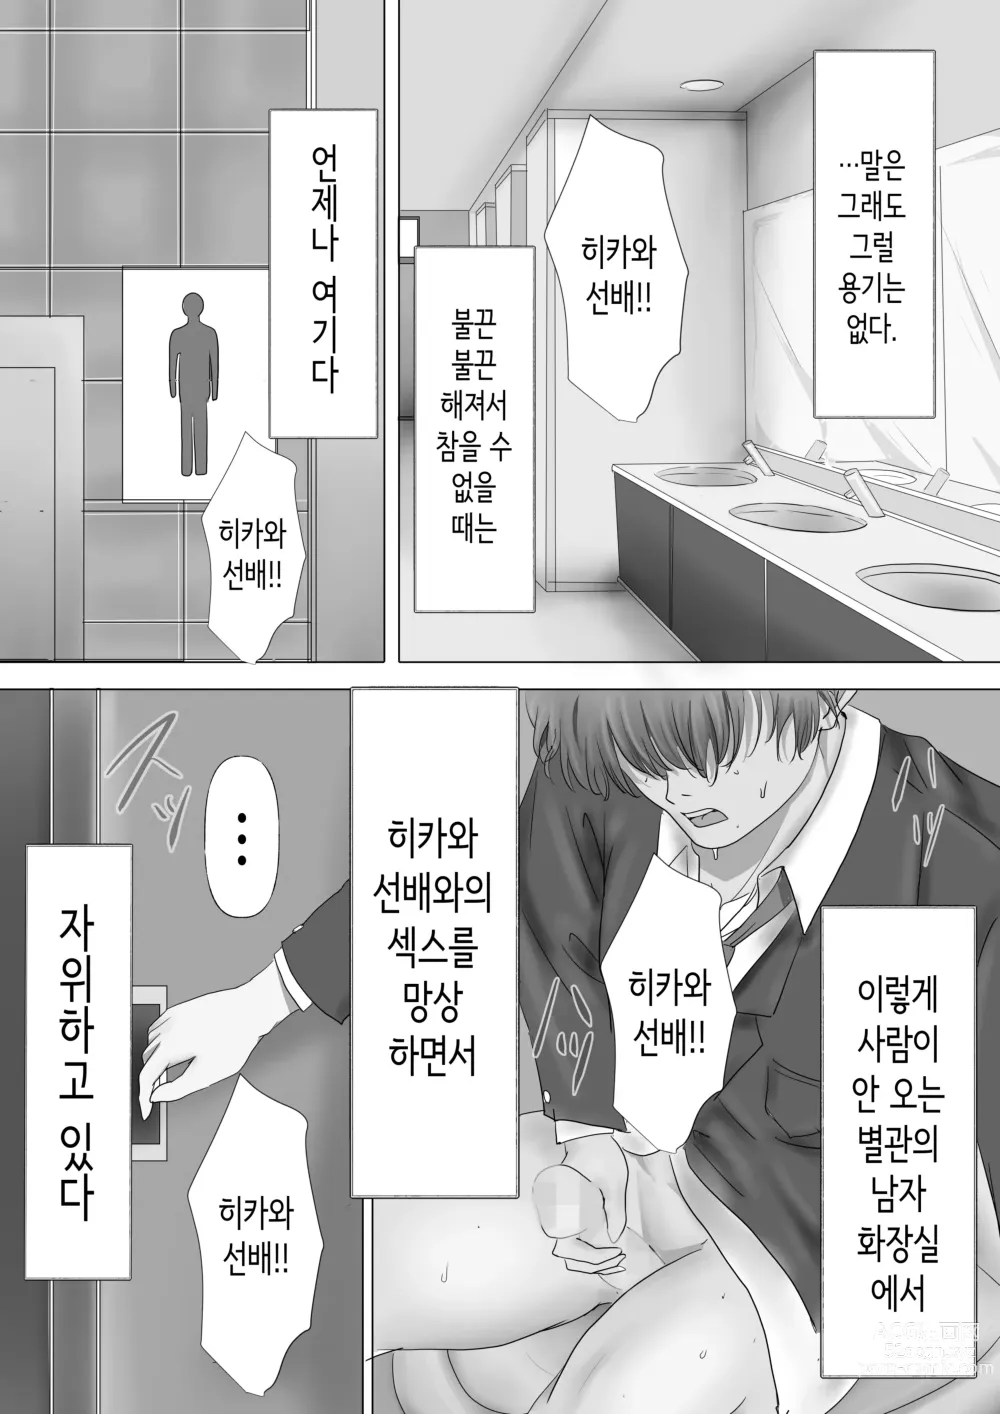 Page 8 of doujinshi 과묵하고 긴 흑발의 거유 풍기위원장을 미친듯이 따먹고 싶다